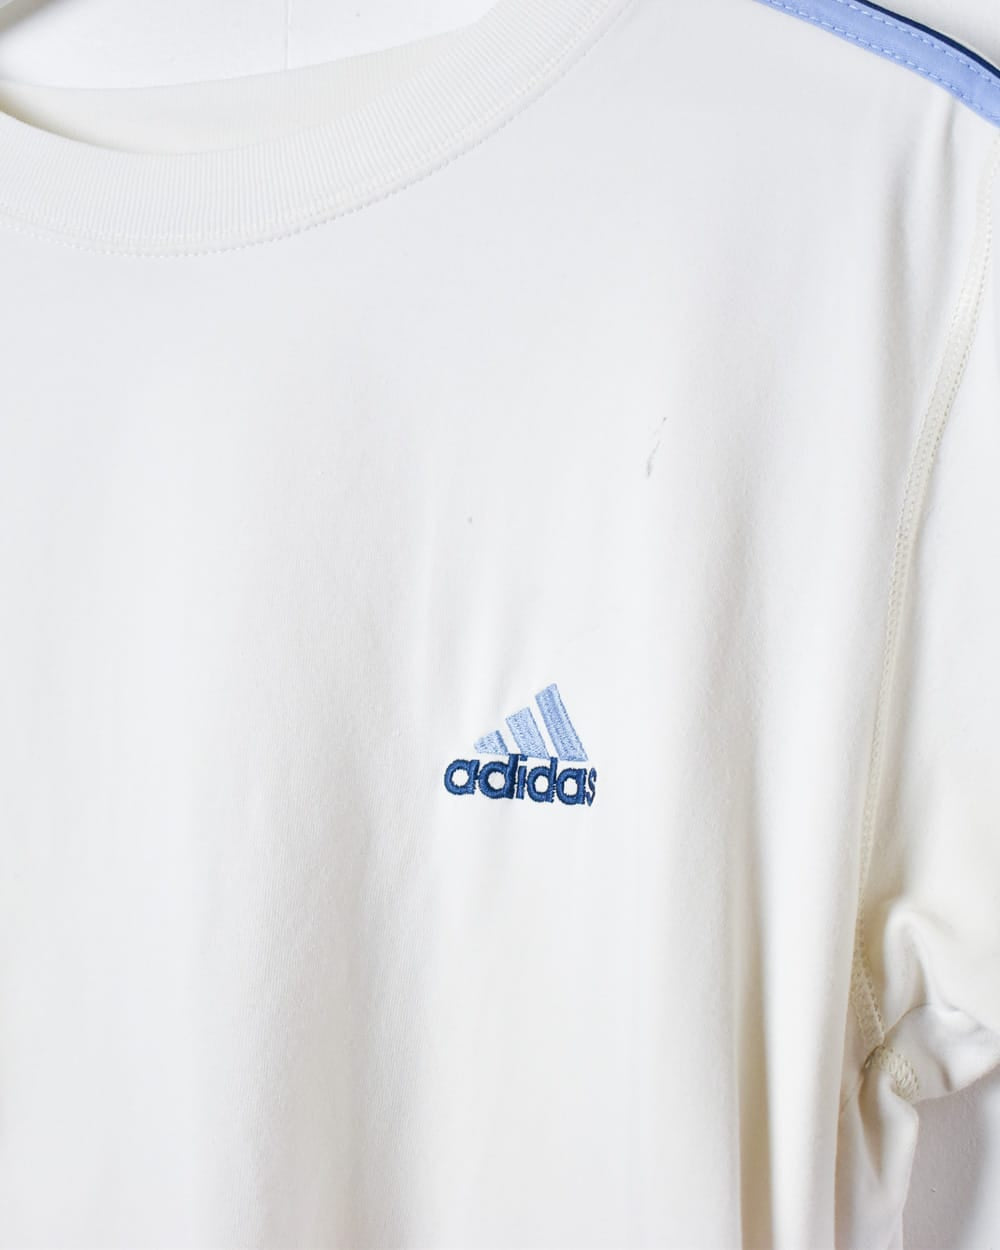 White Adidas T-Shirt - Medium Women's